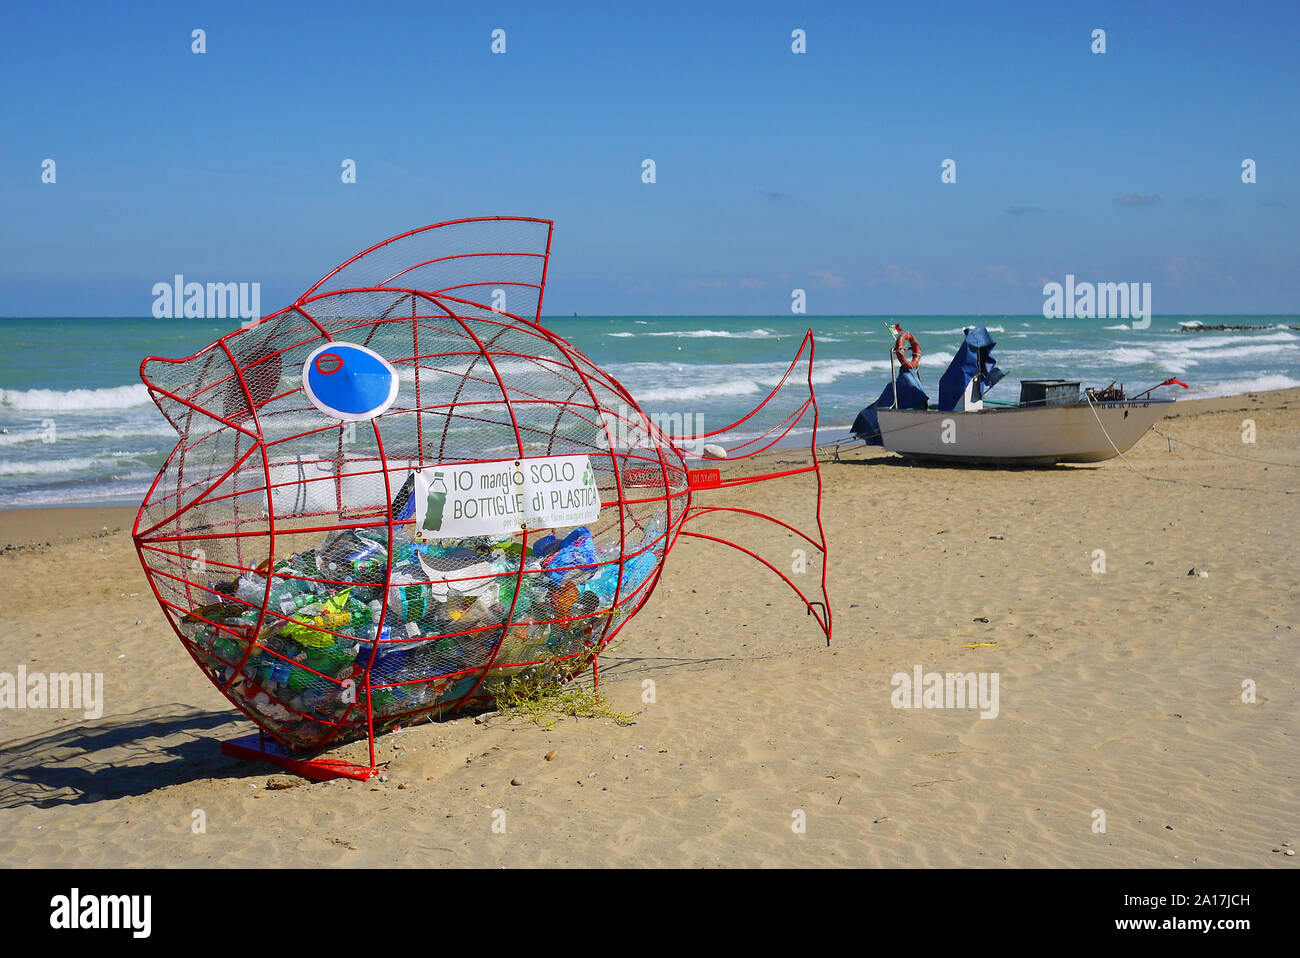 La bottiglia di plastica riciclaggio dei pesci sulla costa adriatica a Termini, Casalbordino, Italia. Si legge "ho solo mangiare le bottiglie di plastica". Foto Stock